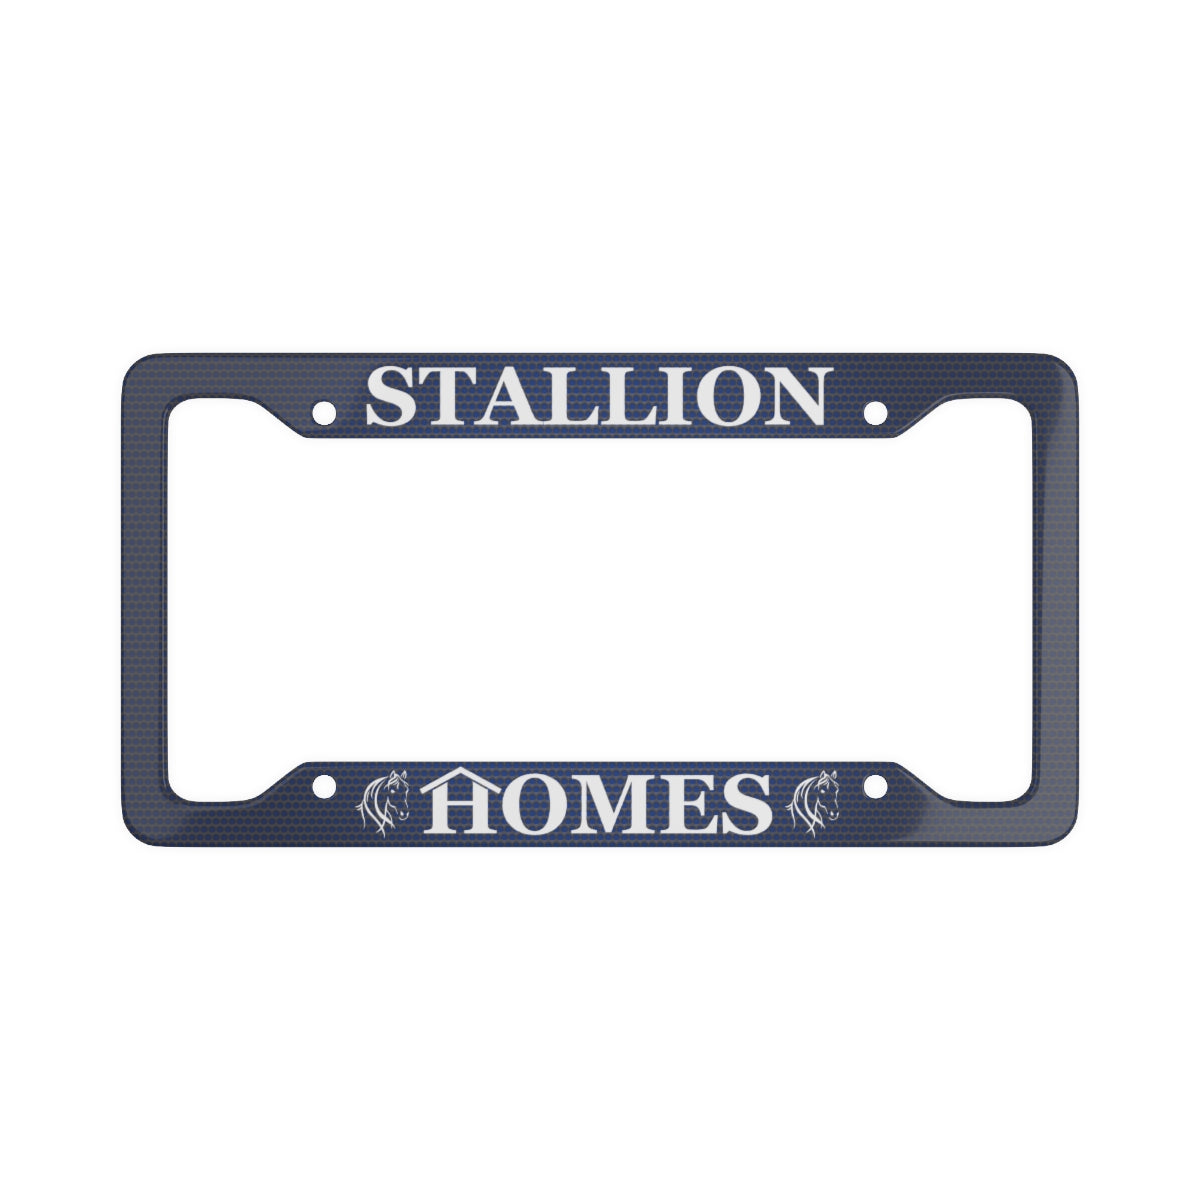 Stallion Homes Dark Blue License Plate Frame